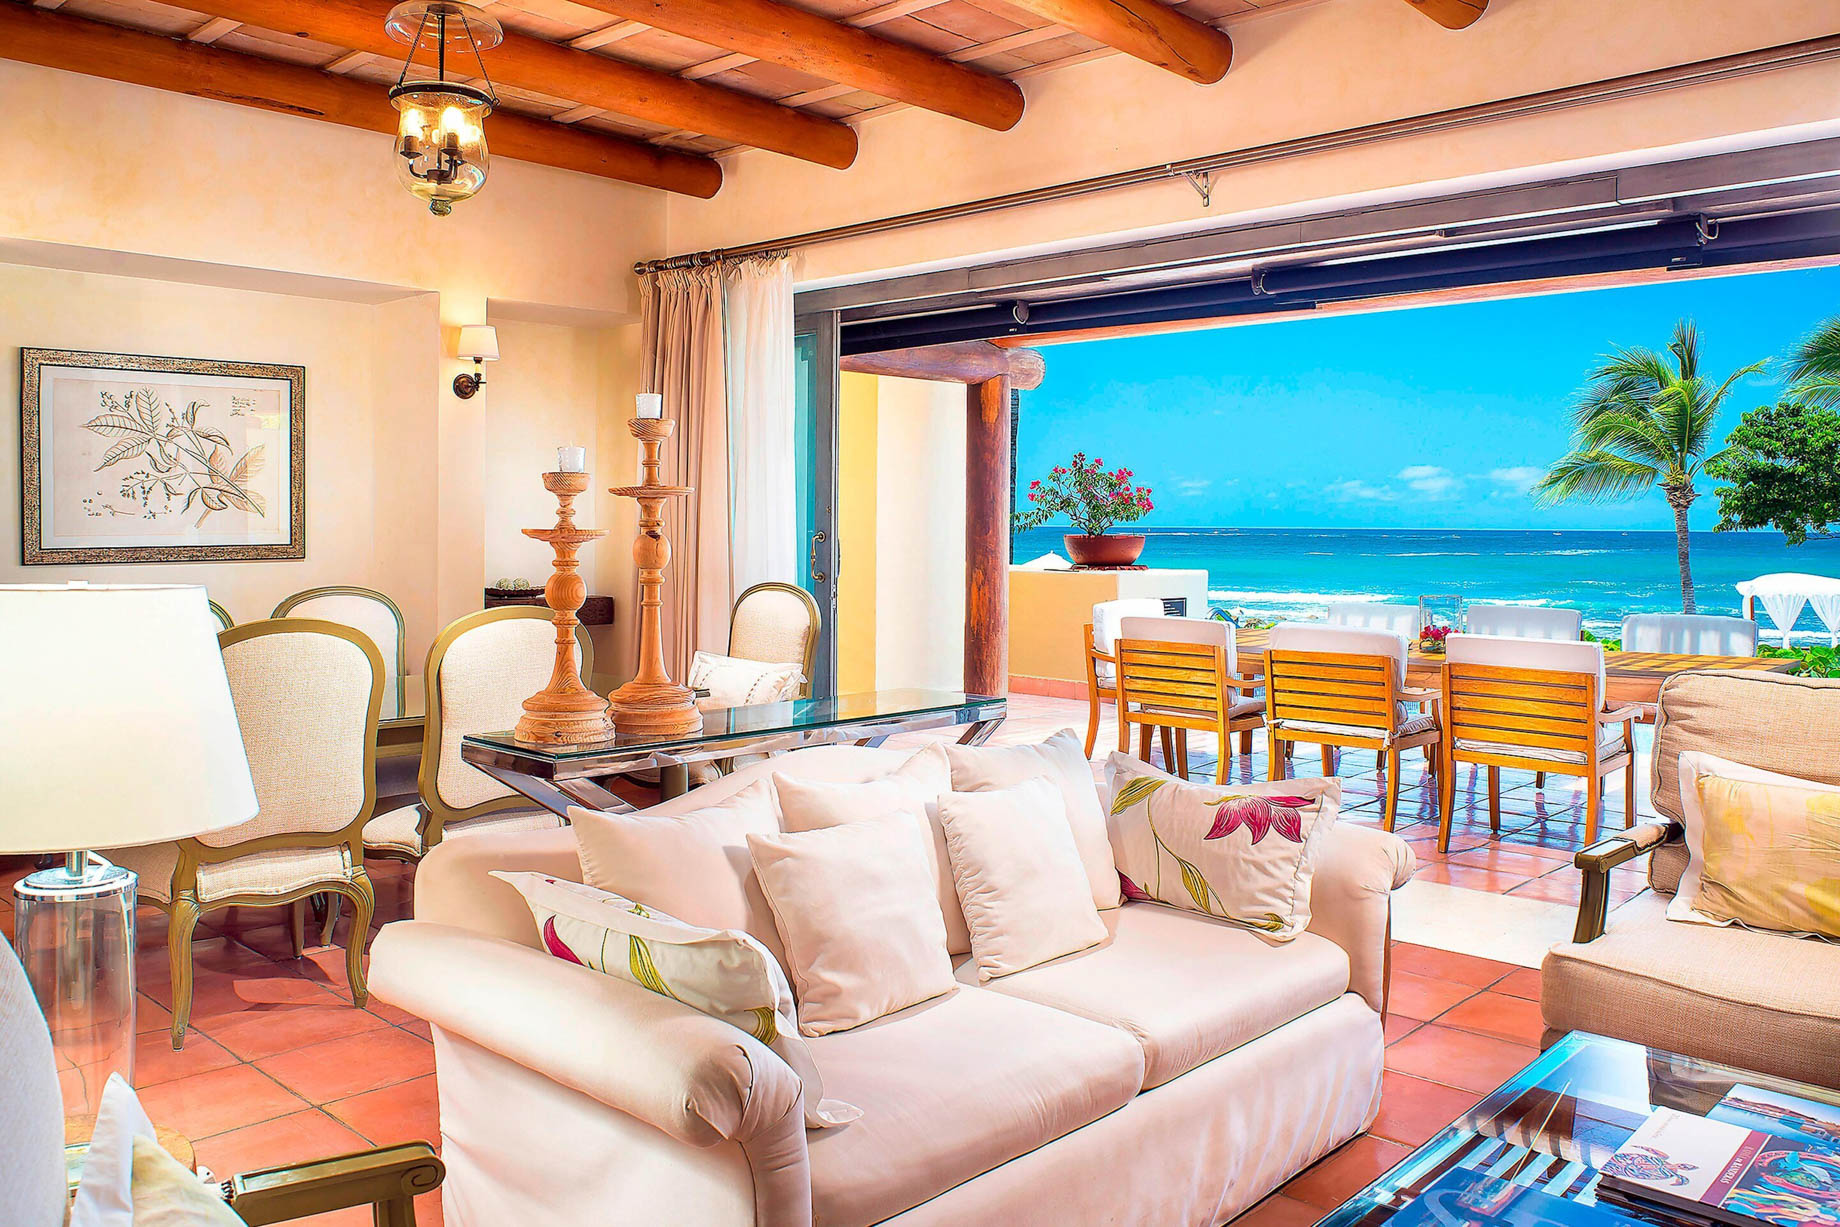 The St. Regis Punta Mita Resort - Nayarit, Mexico - 3 Bedroom Villa Ocean View Living Room